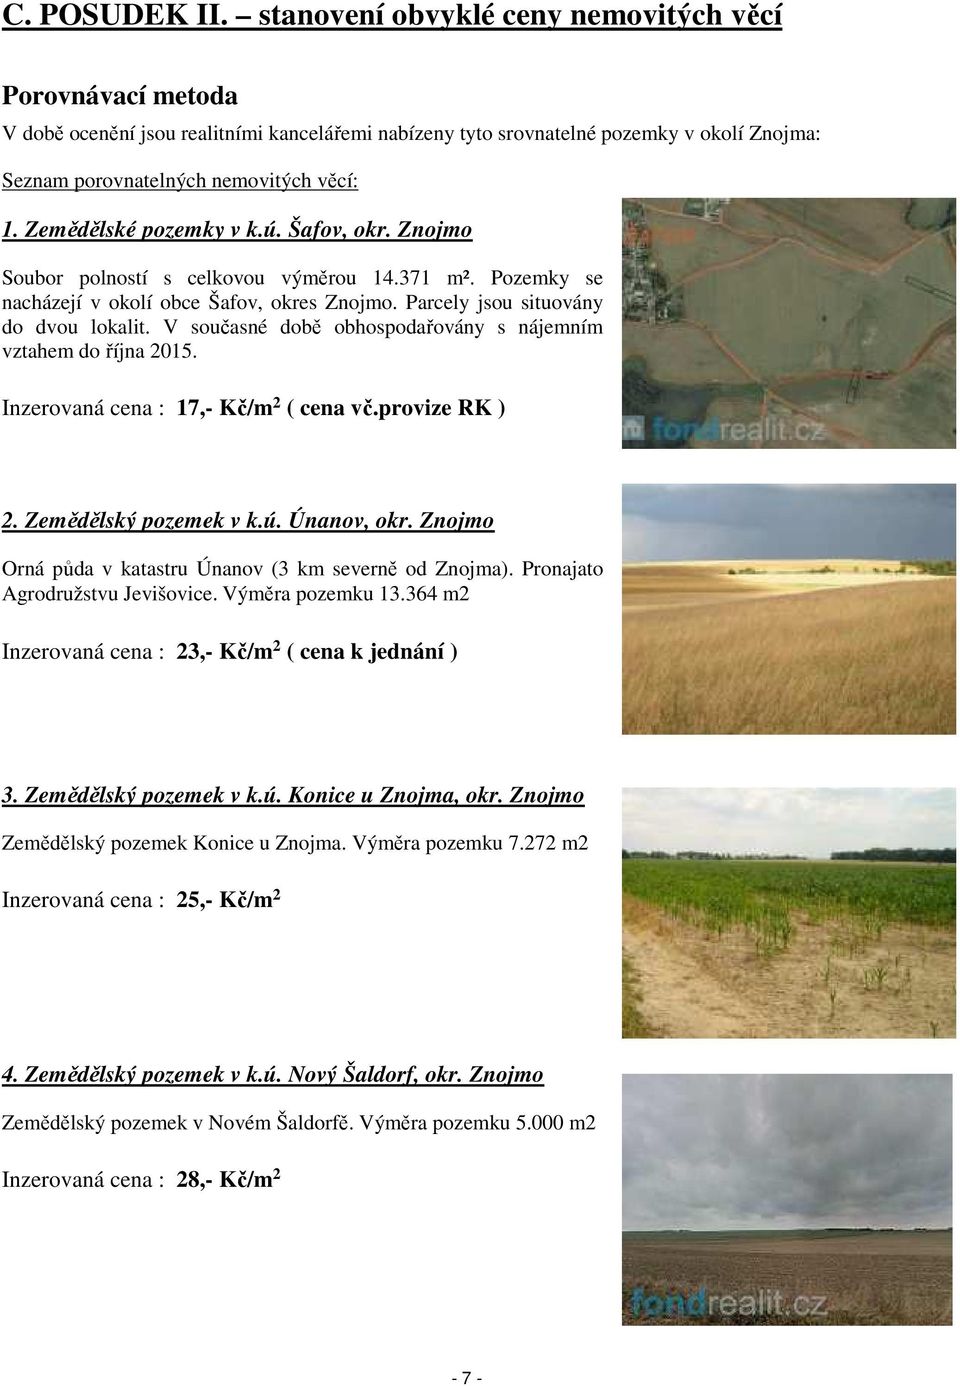 Zemědělské pozemky v k.ú. Šafov, okr. Znojmo Soubor polností s celkovou výměrou 14.371 m². Pozemky se nacházejí v okolí obce Šafov, okres Znojmo. Parcely jsou situovány do dvou lokalit.